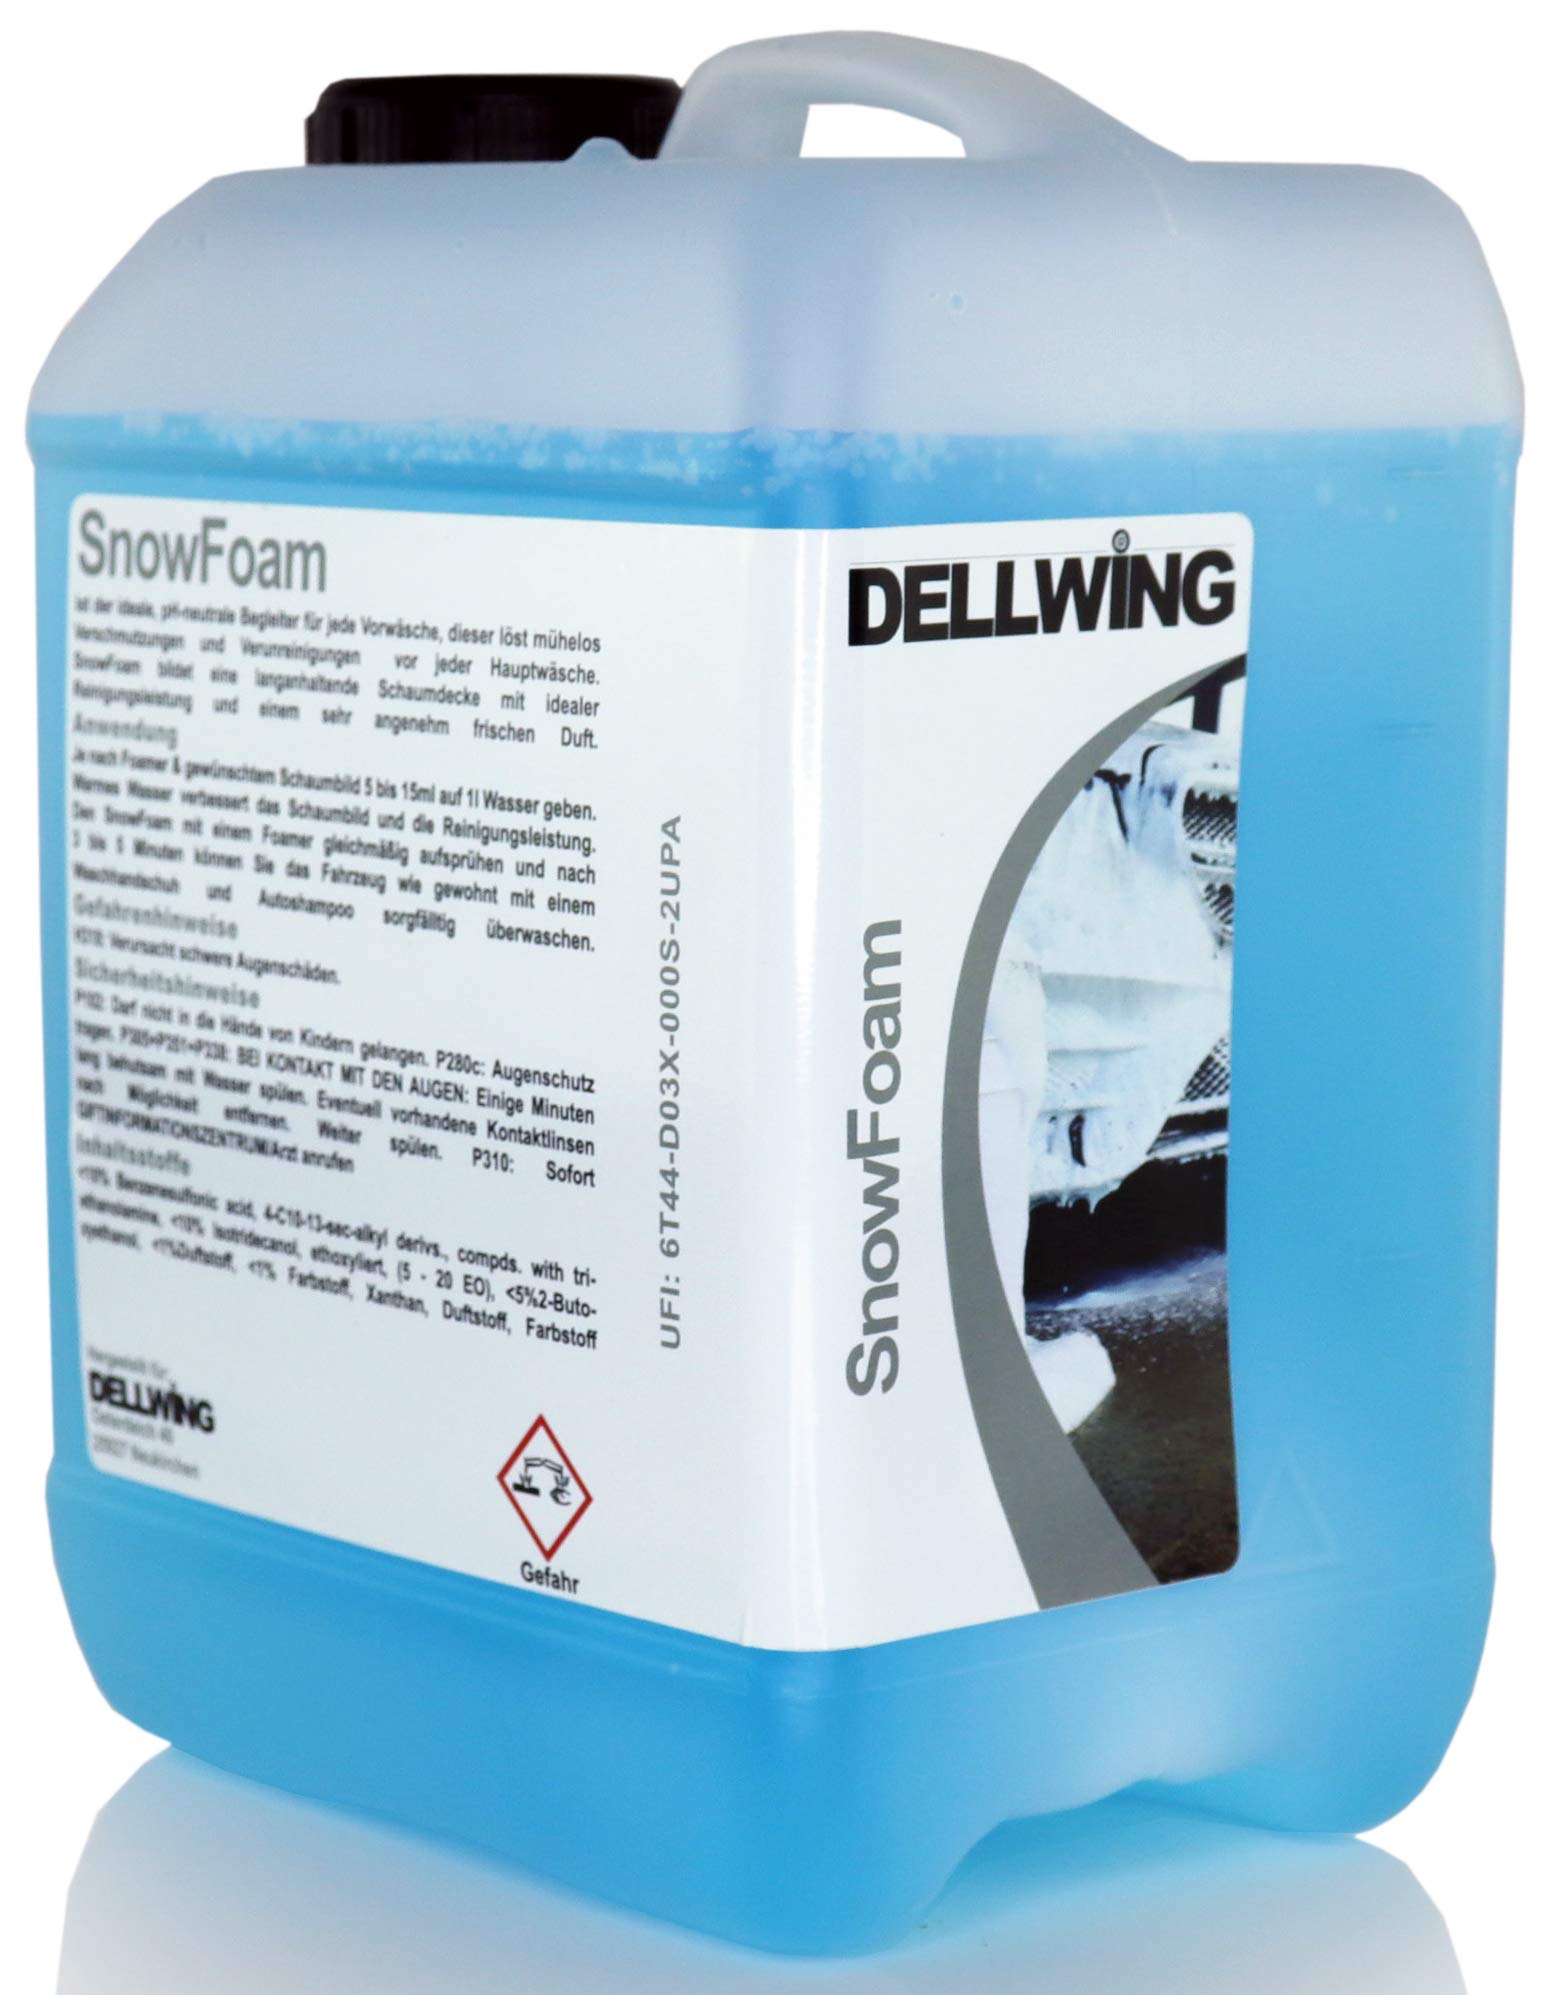 DELLWING Snow Foam WasserMelone 5 L - Ideal für die sanfte Vorwäsche - Bildet eine dicke und langanhaltende Schaumdecke mit einem schönen Duft von DELLWING